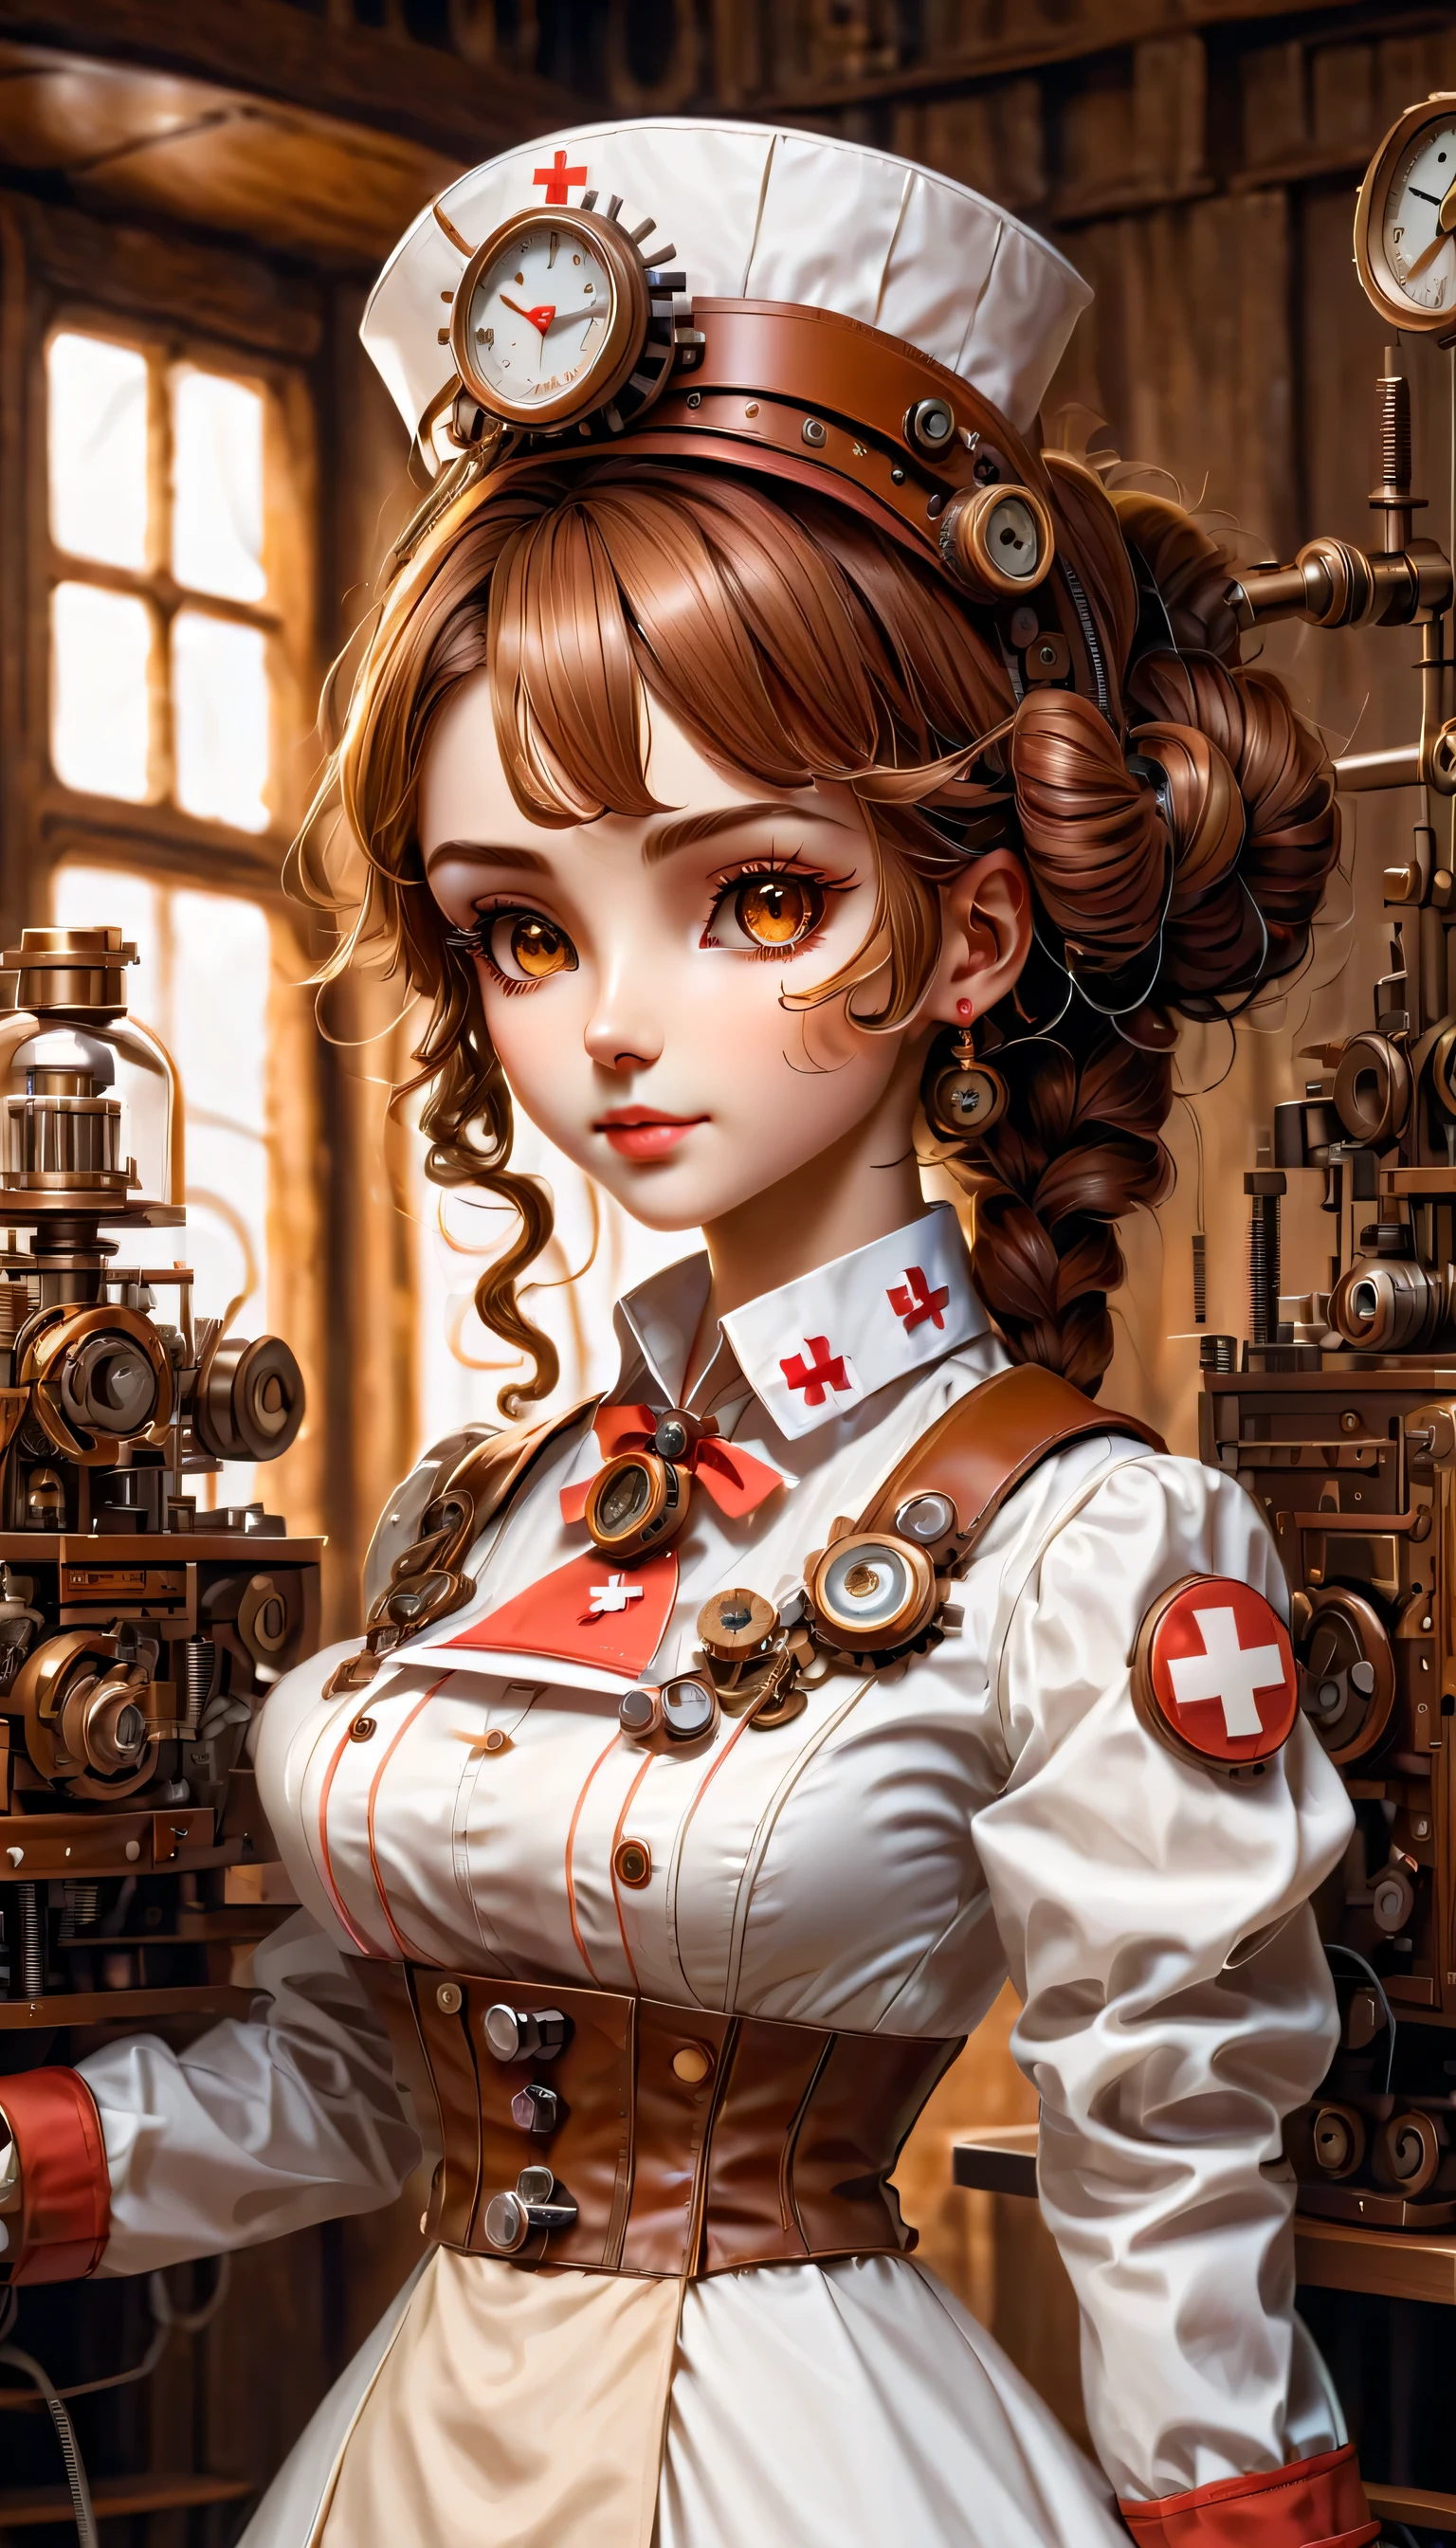 機構:ヒューマノイド:看護師:16th century European 看護師 uniform:全身,人形の顔:完璧な顔:大きな茶色の目,まつげ,ヘアワイヤーを隠す,彼女は機械でできている,スチームパンク要素,機械的な engineering,機械的なly,機械的な,ポップ,かわいい,複雑なディテール,非常に細かい,高解像度,高品質,最高品質,明らかに,はっきりする,美しい光と影,3次元,愛らしい外見,複雑な構成,機構,動的,忙しい,一生懸命働く,応援したくなる表現,医療機器,医療用品棚,瓶,それが機械であるという証拠を示す,窓からの光